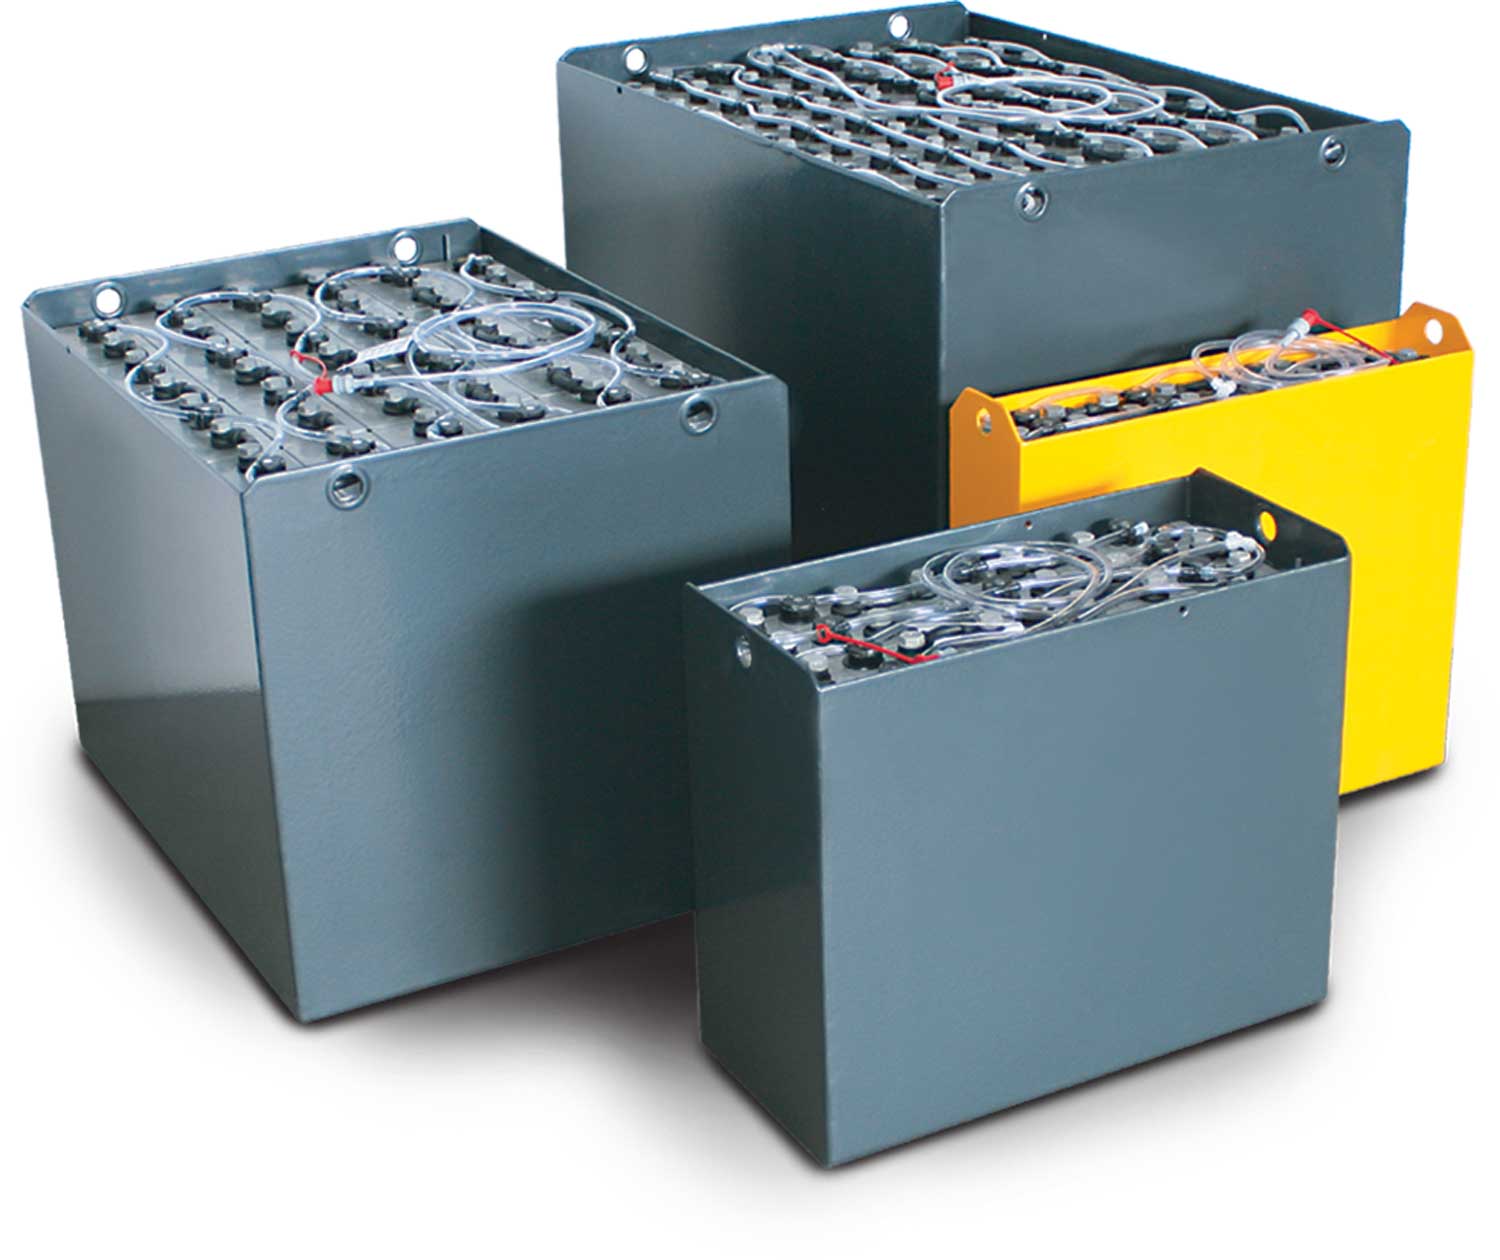 Q-Batteries 48V Gabelstaplerbatterie 3 PzS 420 DIN B (1035 * 353 * 784) Trog 57017037